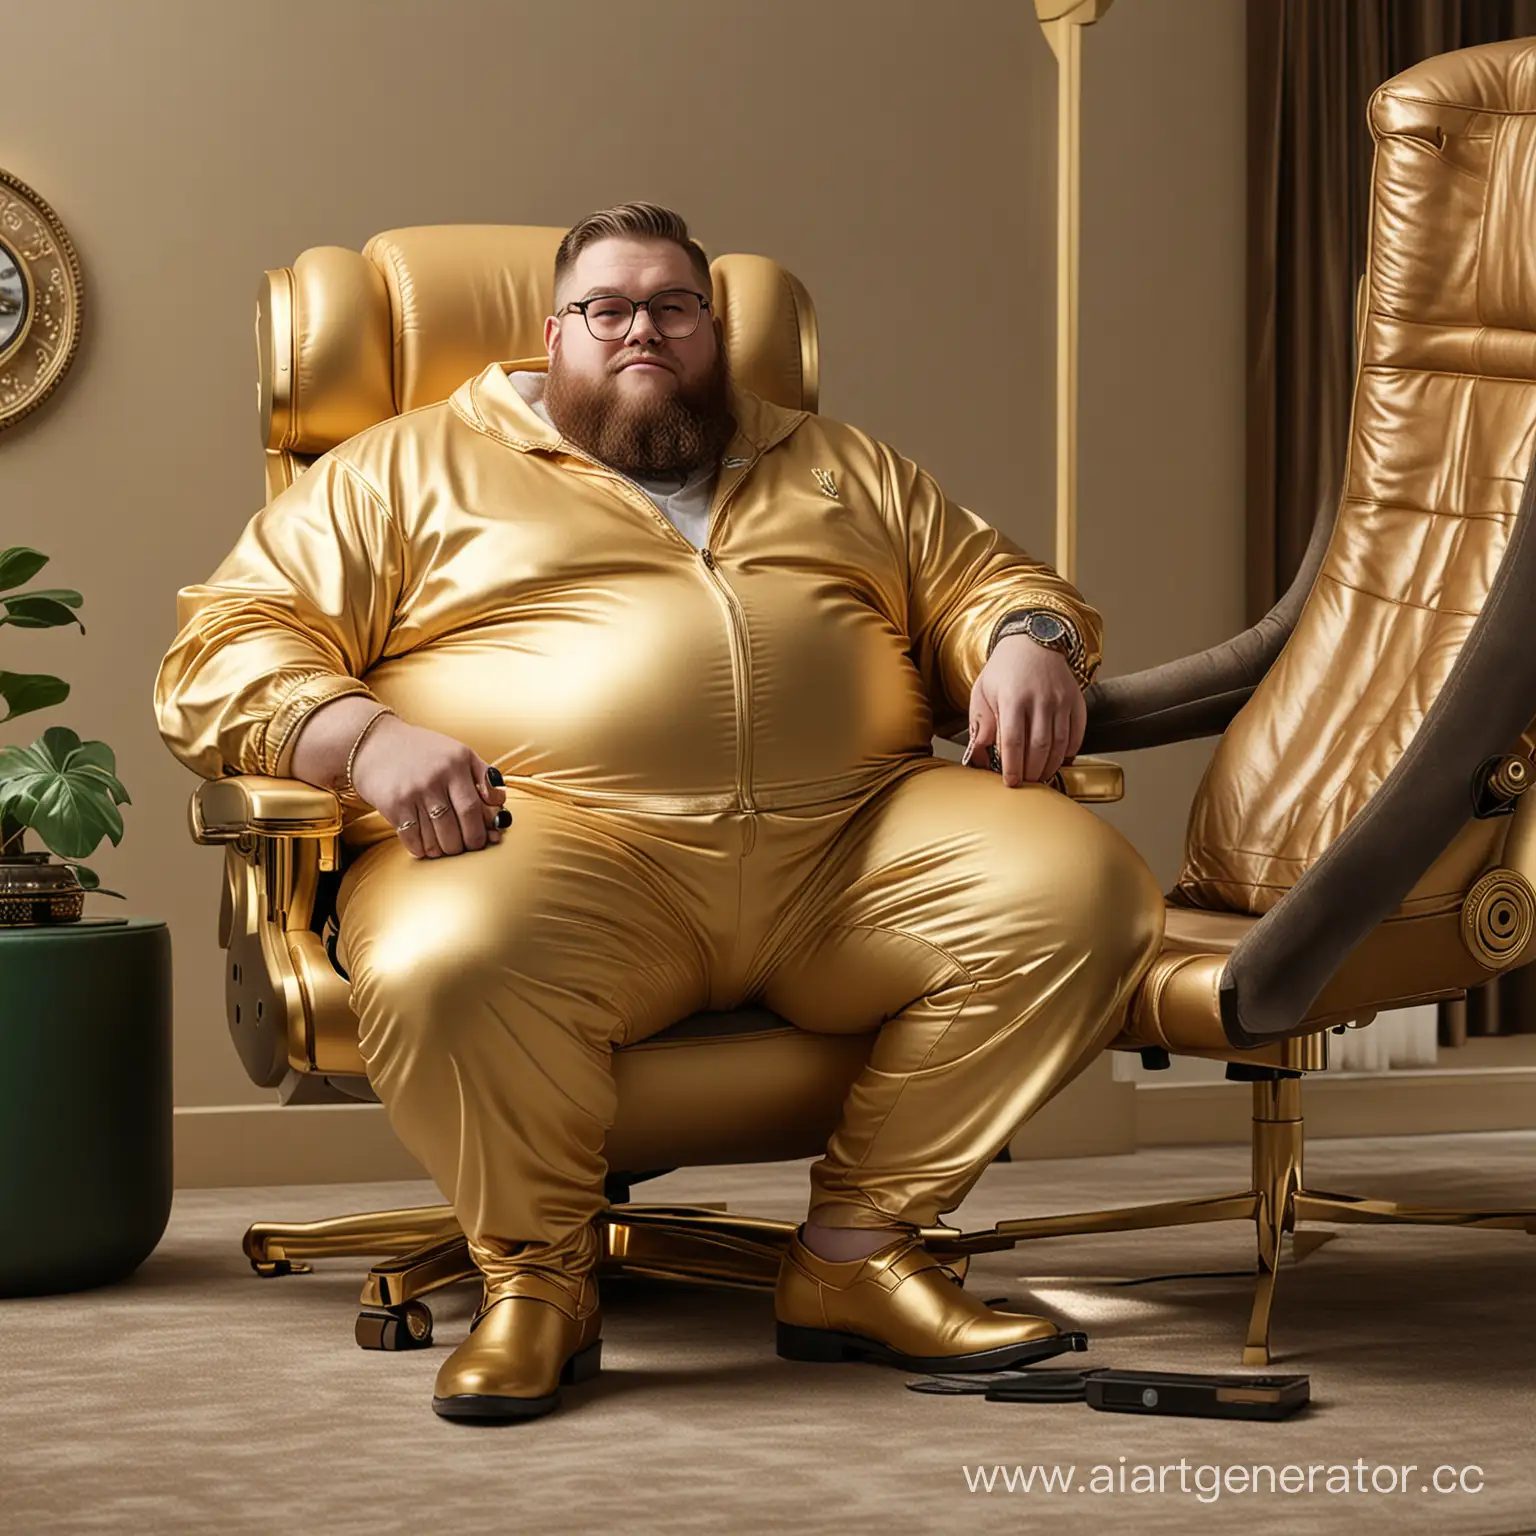 Жирный мужчина богатый в часах Rolex и наушниках Airpods сидит за золотым игровым креслом